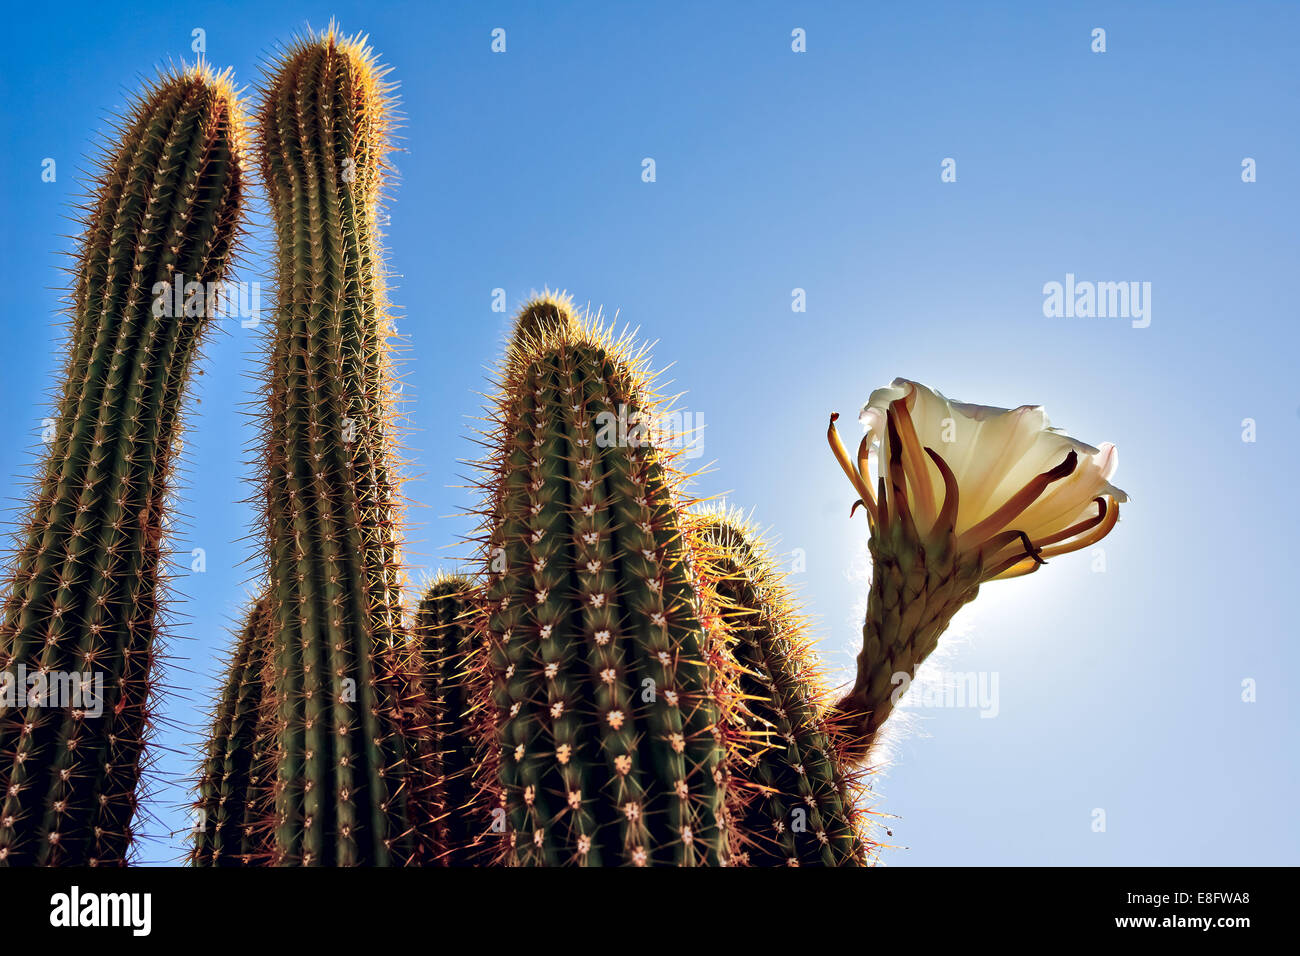 USA, Arizona, comté de Maricopa, Arlington, compte tenu de la hausse ( cactus Trichocereus Spachianus ) connu sous le nom de Golden Torch Banque D'Images